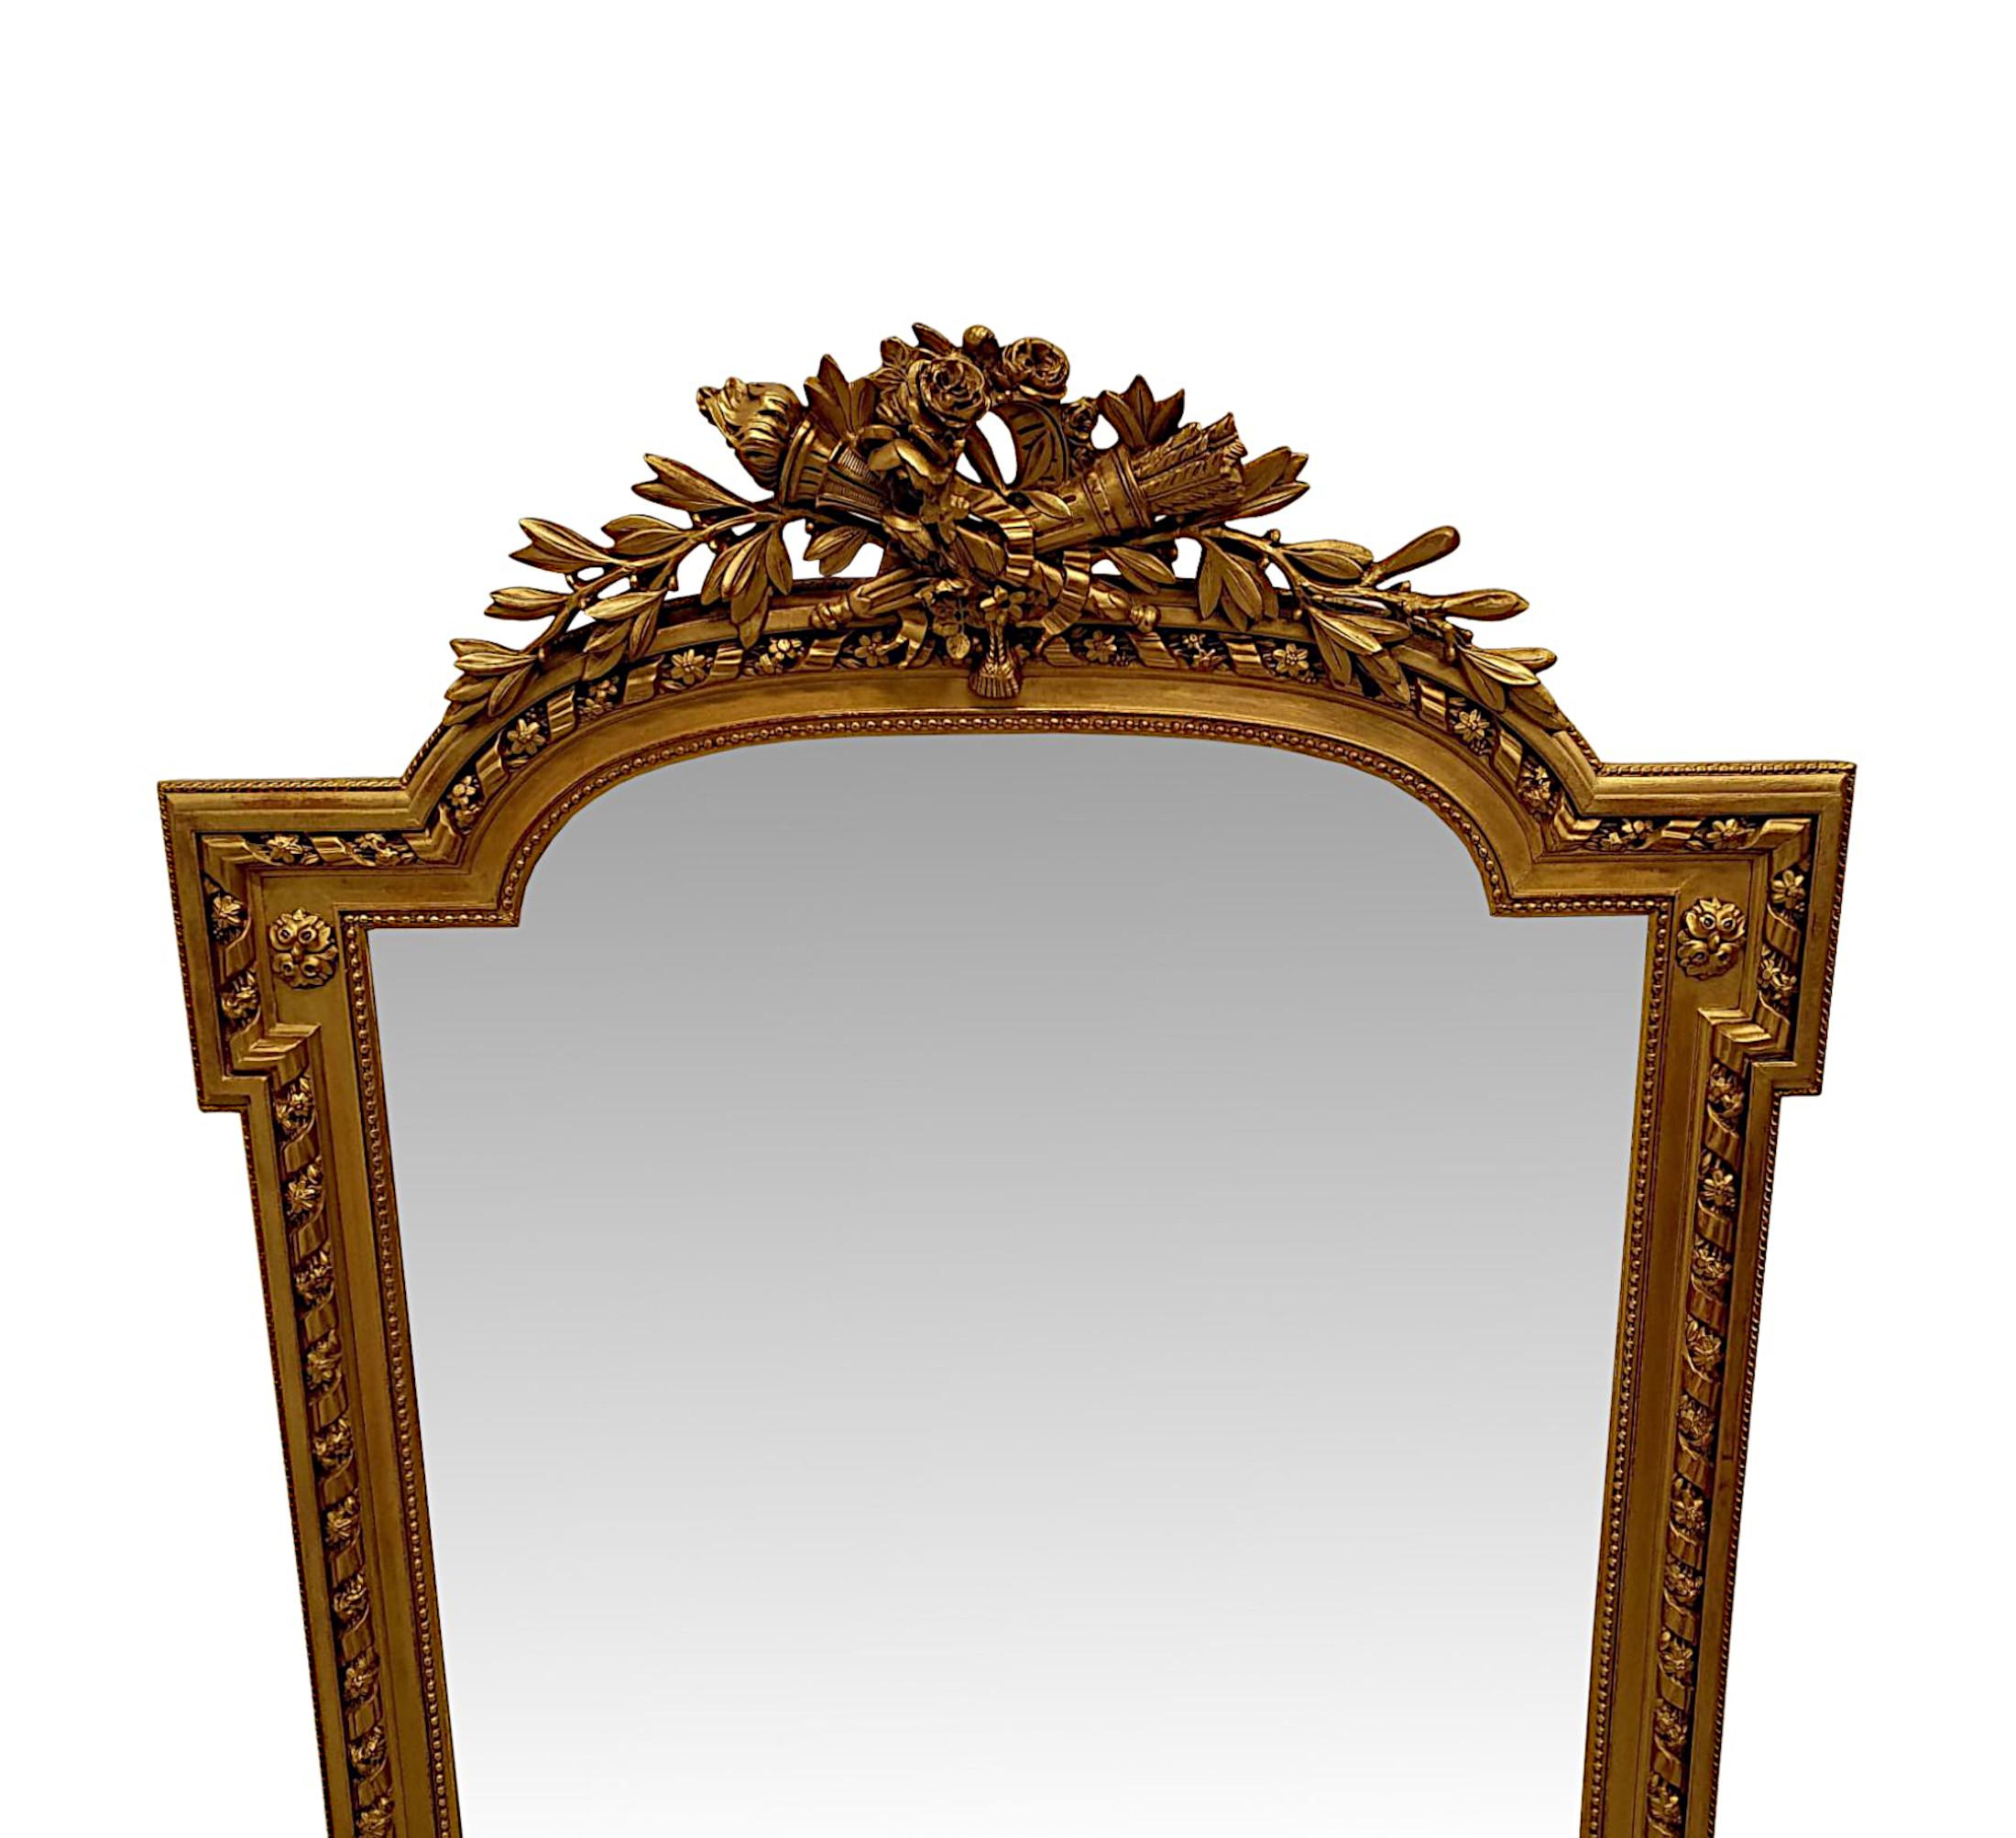 Ein prächtiger vergoldeter Flur- oder Mantelspiegel aus dem 19. Jahrhundert, fein von Hand geschnitzt und von außergewöhnlicher Qualität.  Die Spiegelglasplatte von geformter, rechteckiger Form befindet sich in einem vergoldeten, geformten Rahmen